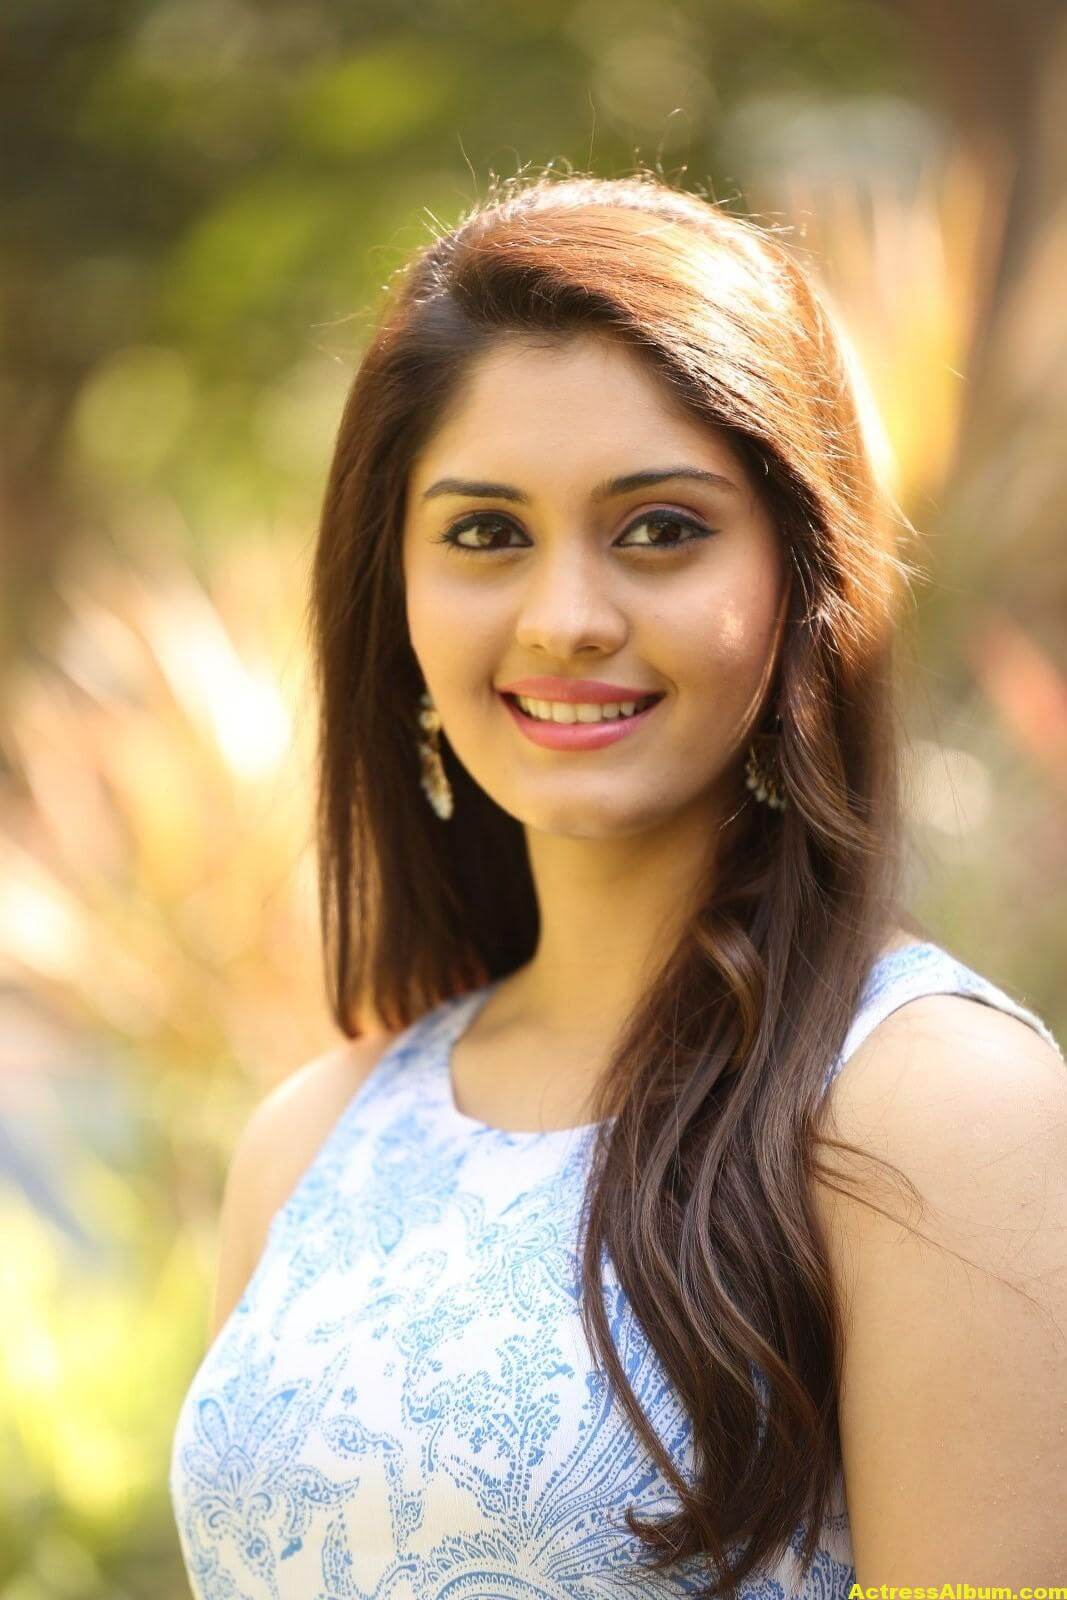 Surabhi Latest Hot Photos - Actress Album